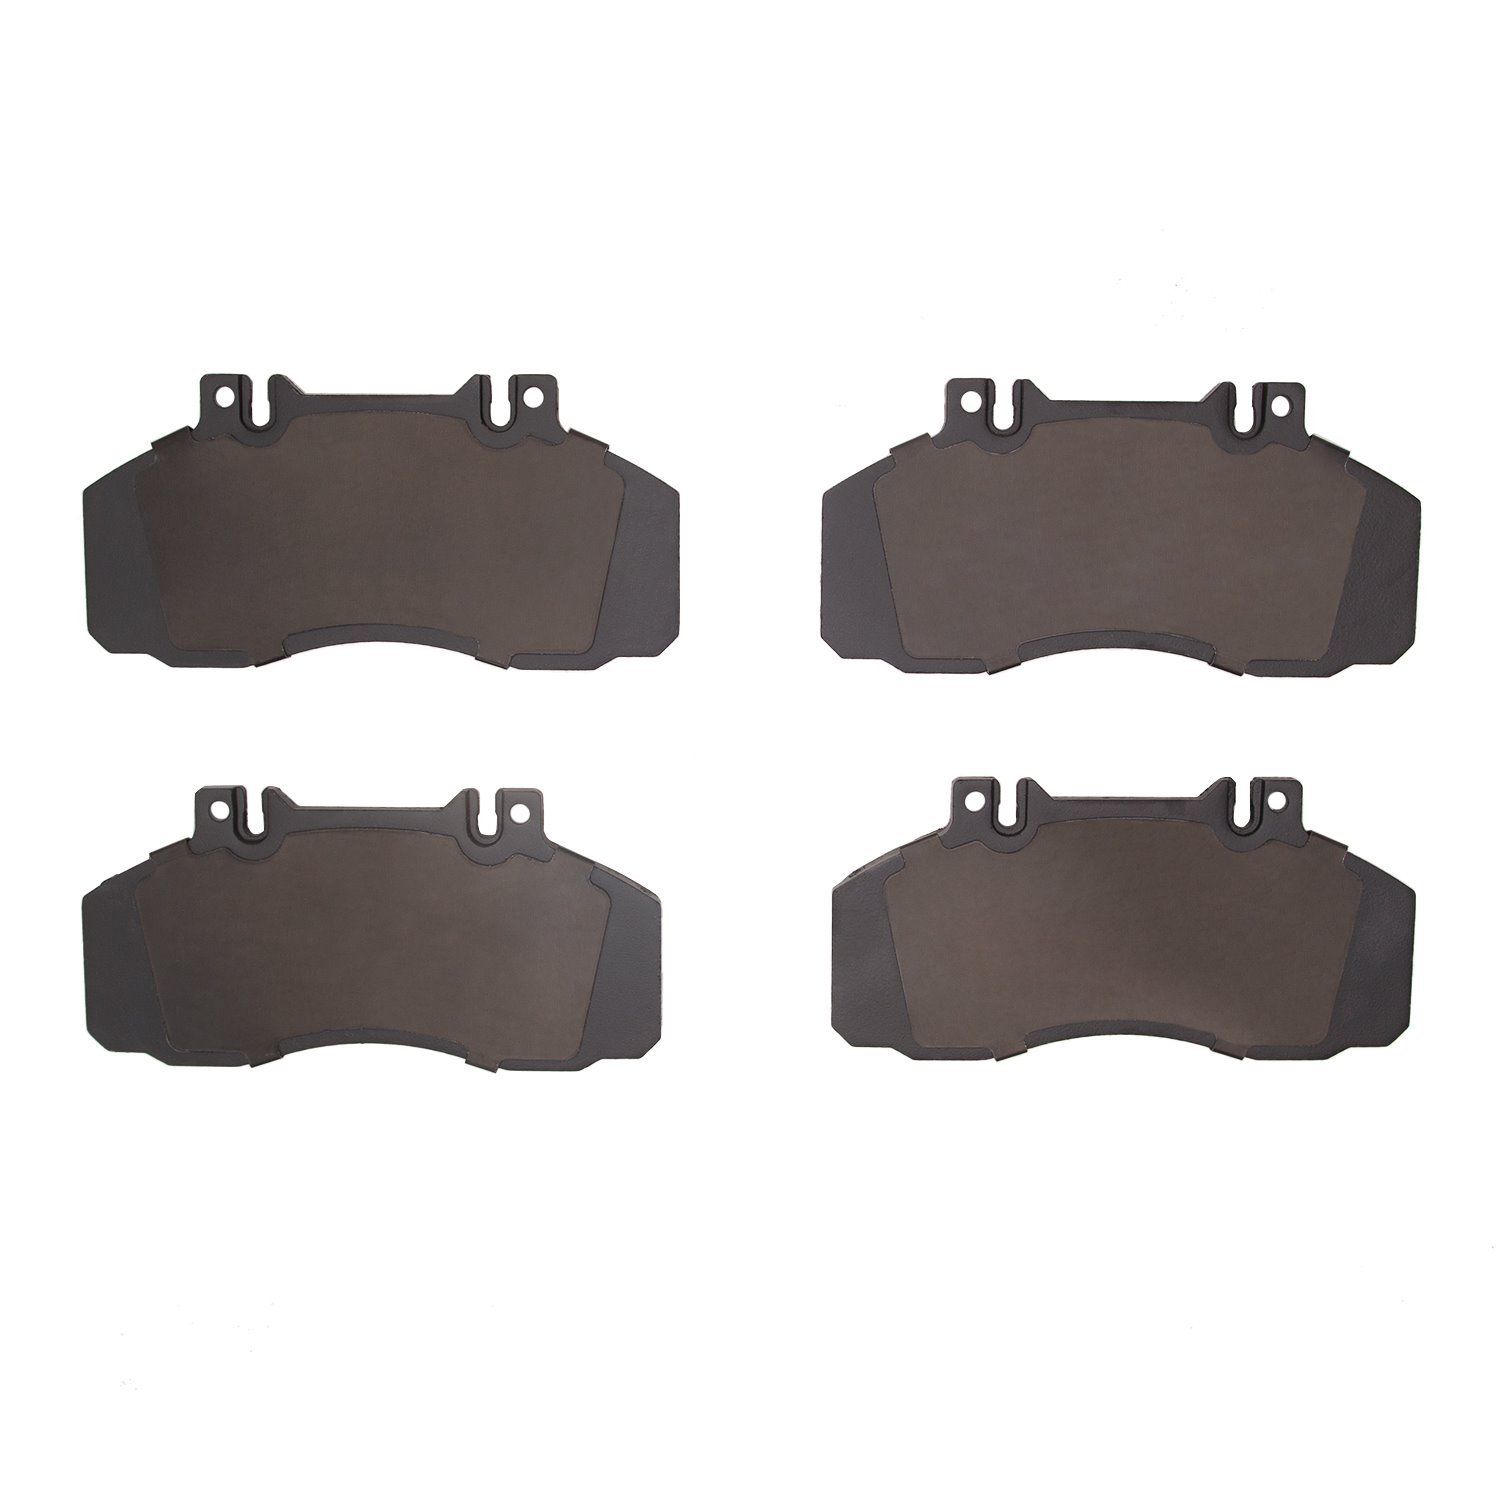 1311-1062-00 3000-Series Semi-Metallic Brake Pads, 2005-2012 Multiple Makes/Models, Position: Fr & Rr,Fr,Rr